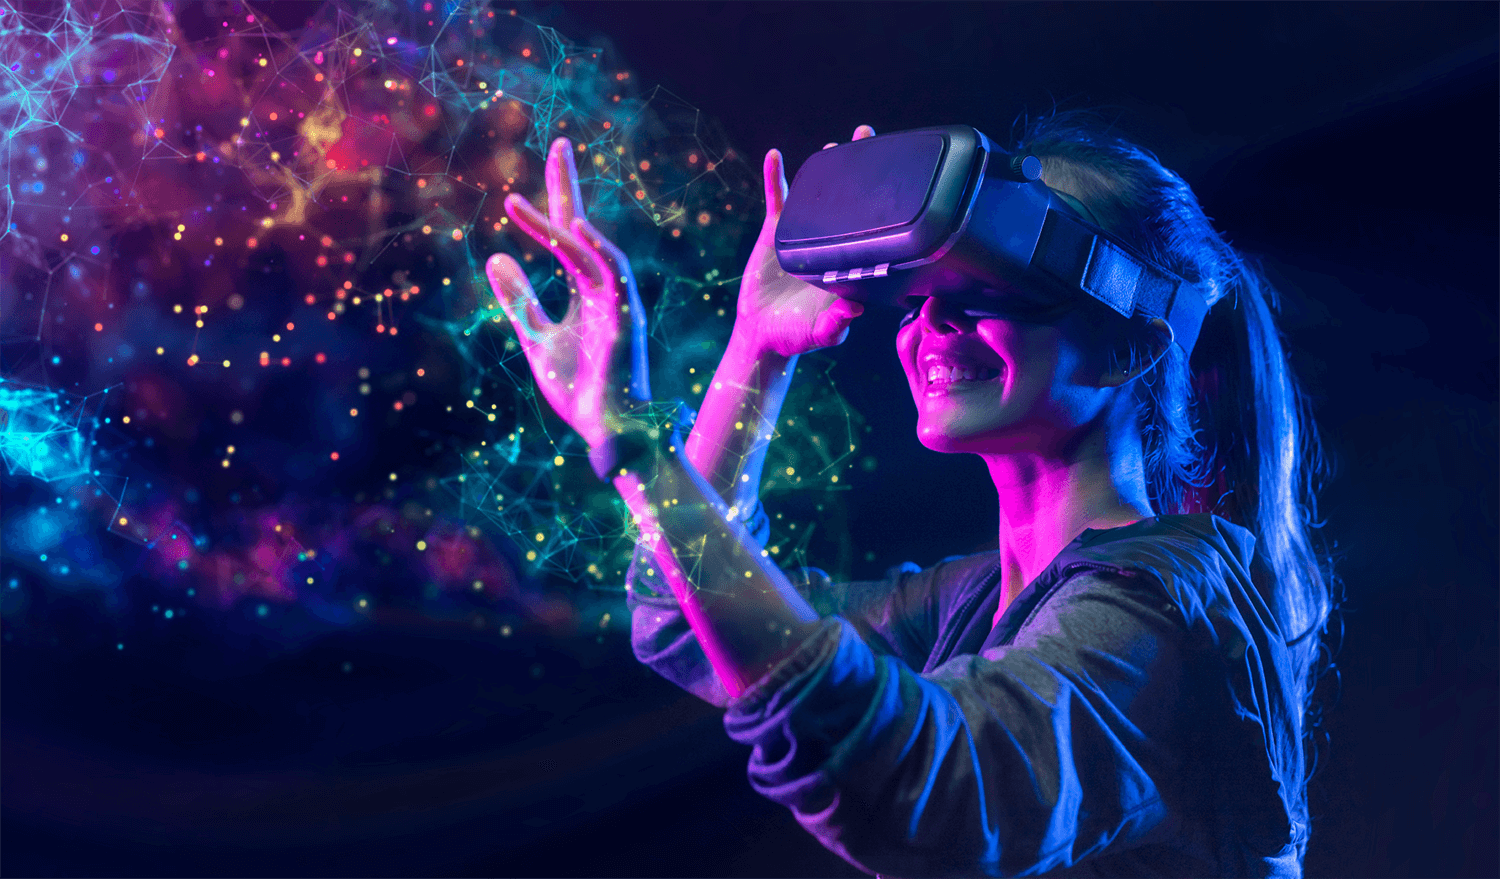 图片展示一位女士戴着虚拟现实头盔，伸手触摸充满光点的虚拟空间，面露微笑，仿佛沉浸在高科技体验中。